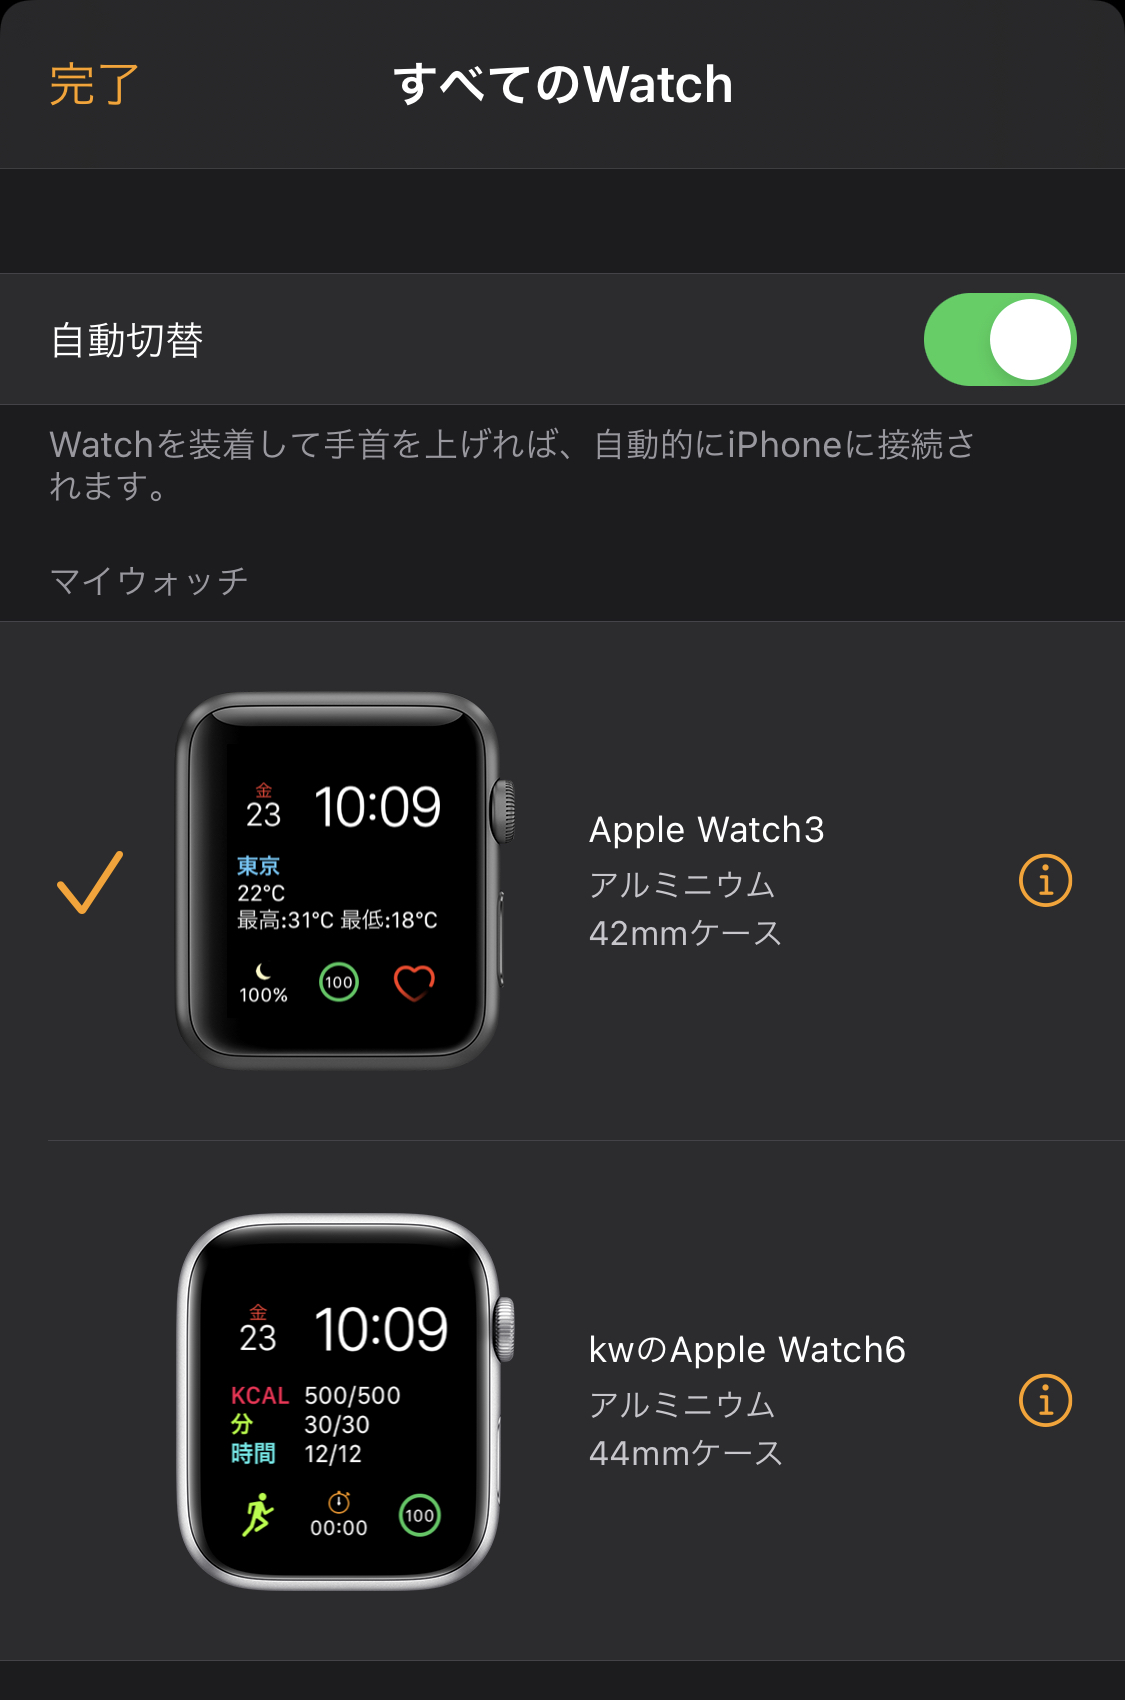 Apple Watchは2台持ちをすることで完成するのではないかと思った 